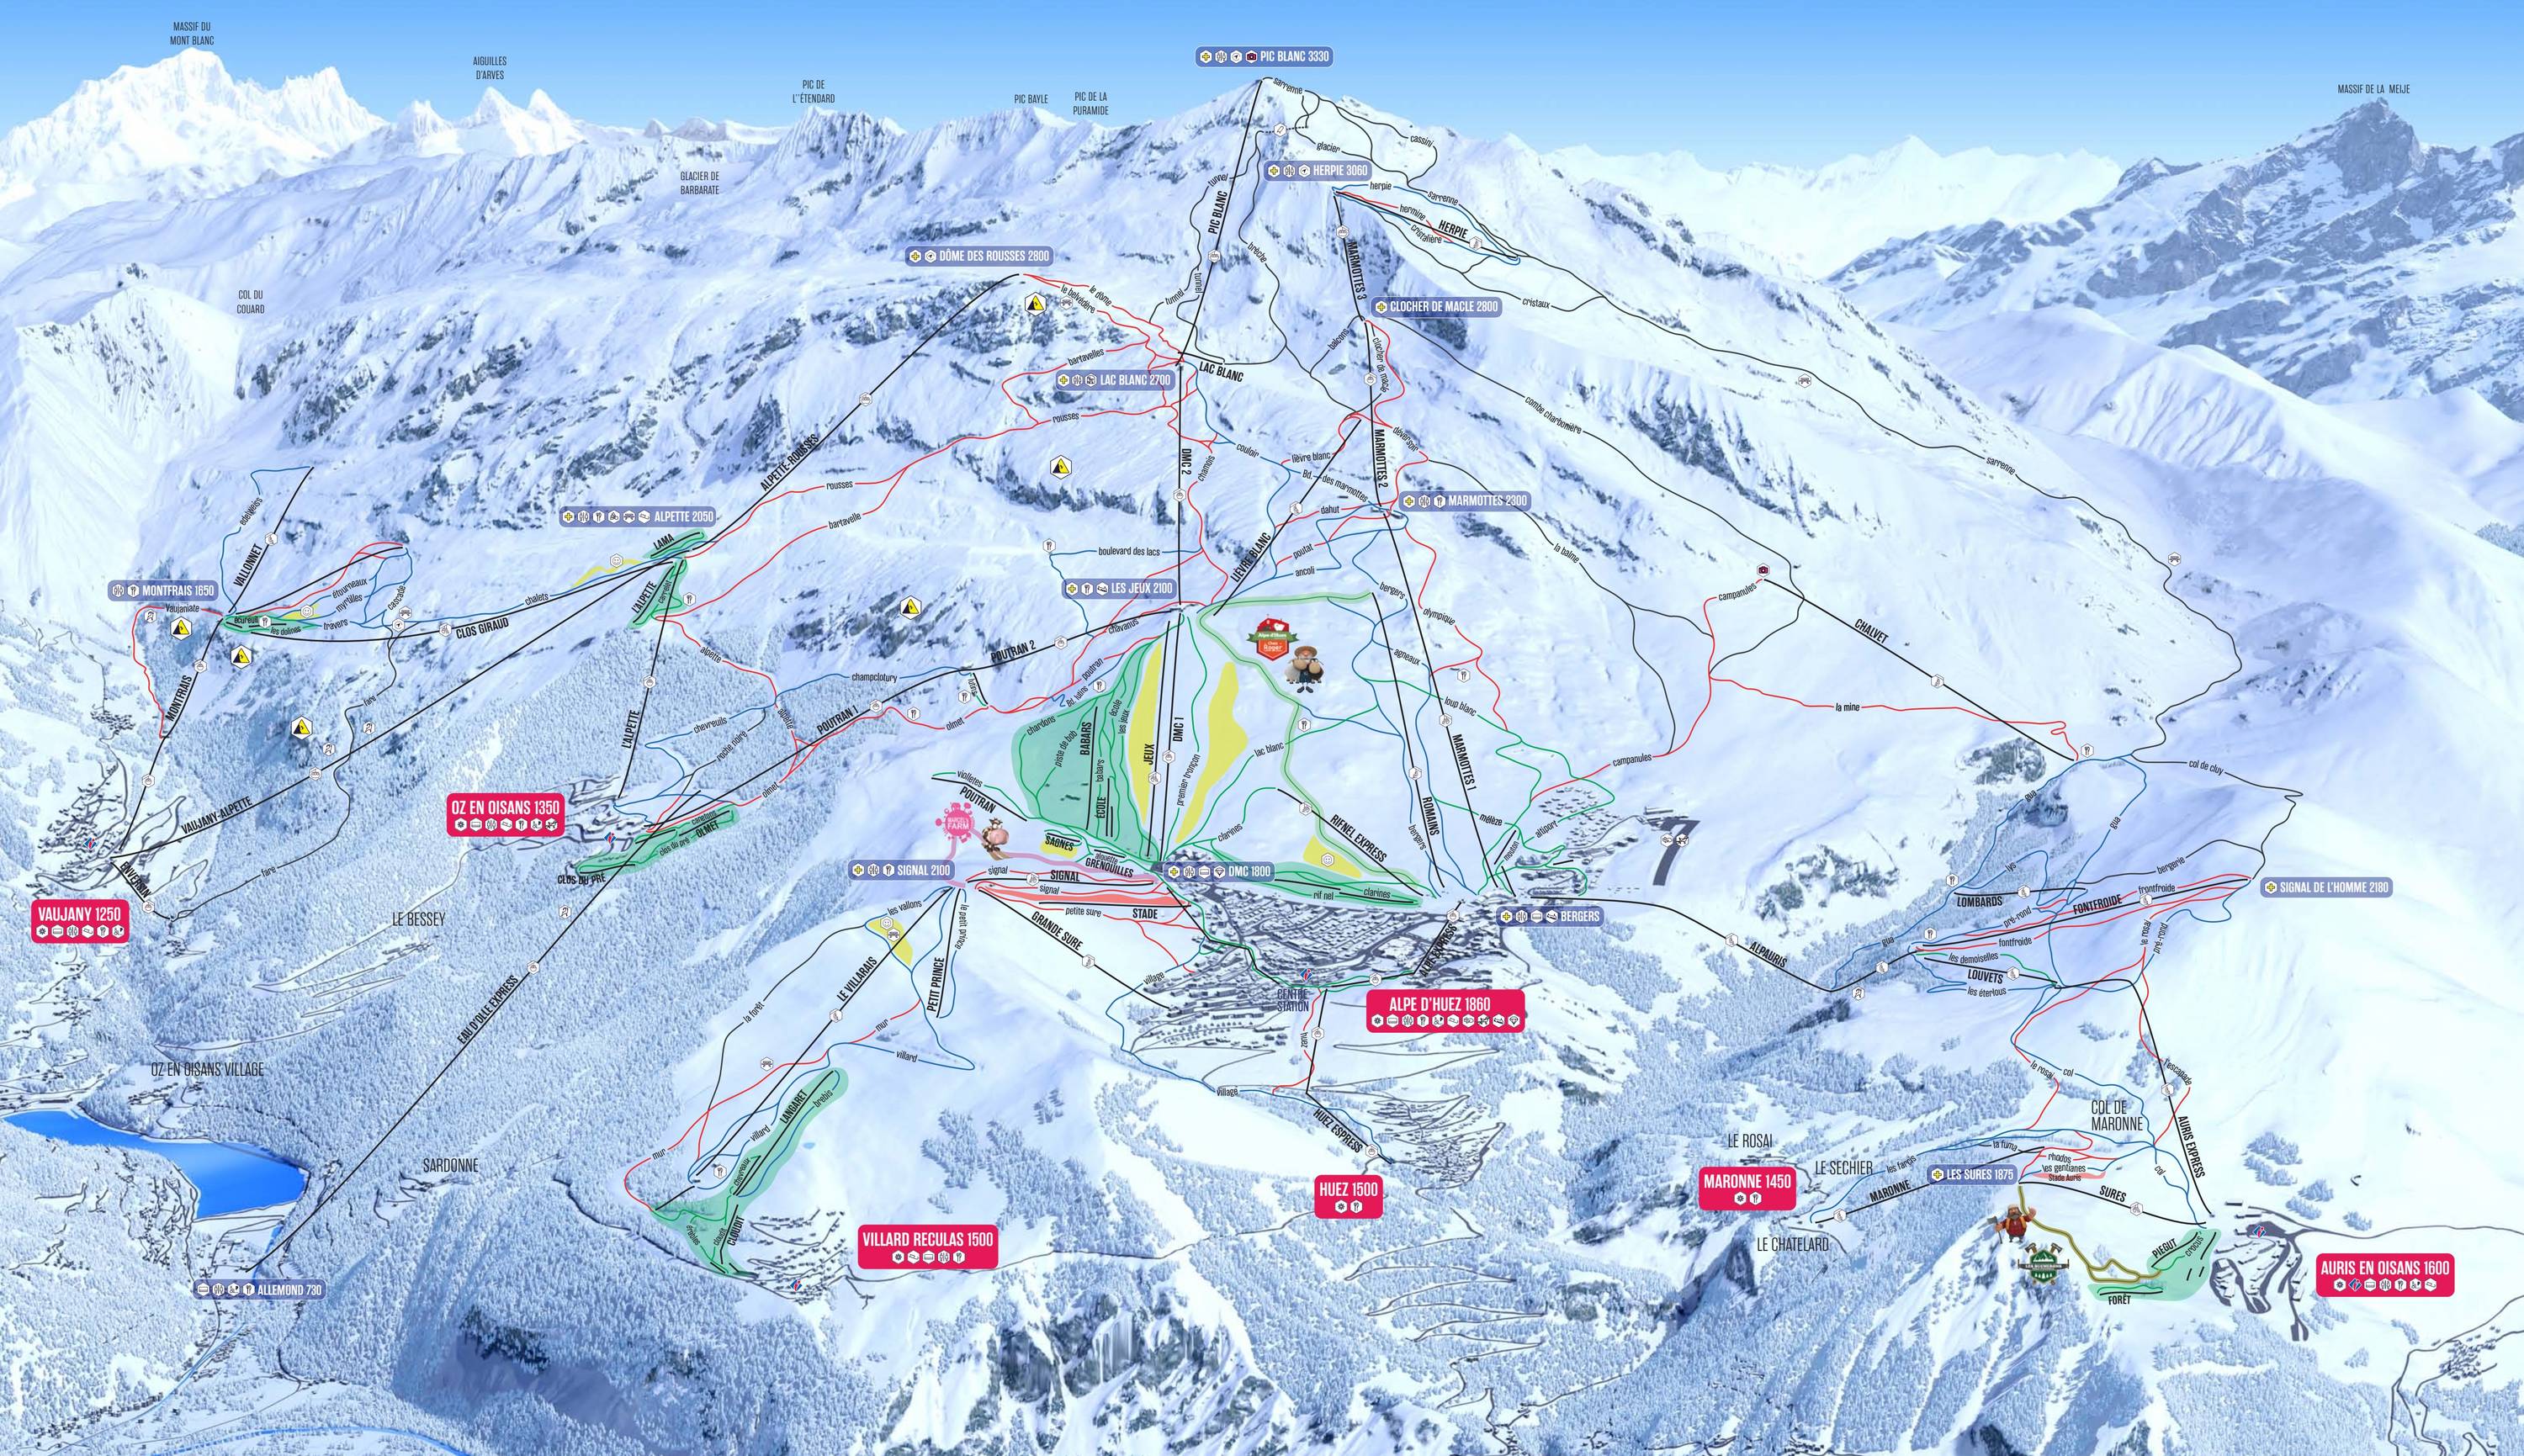 Piste map Alpe d'Huez